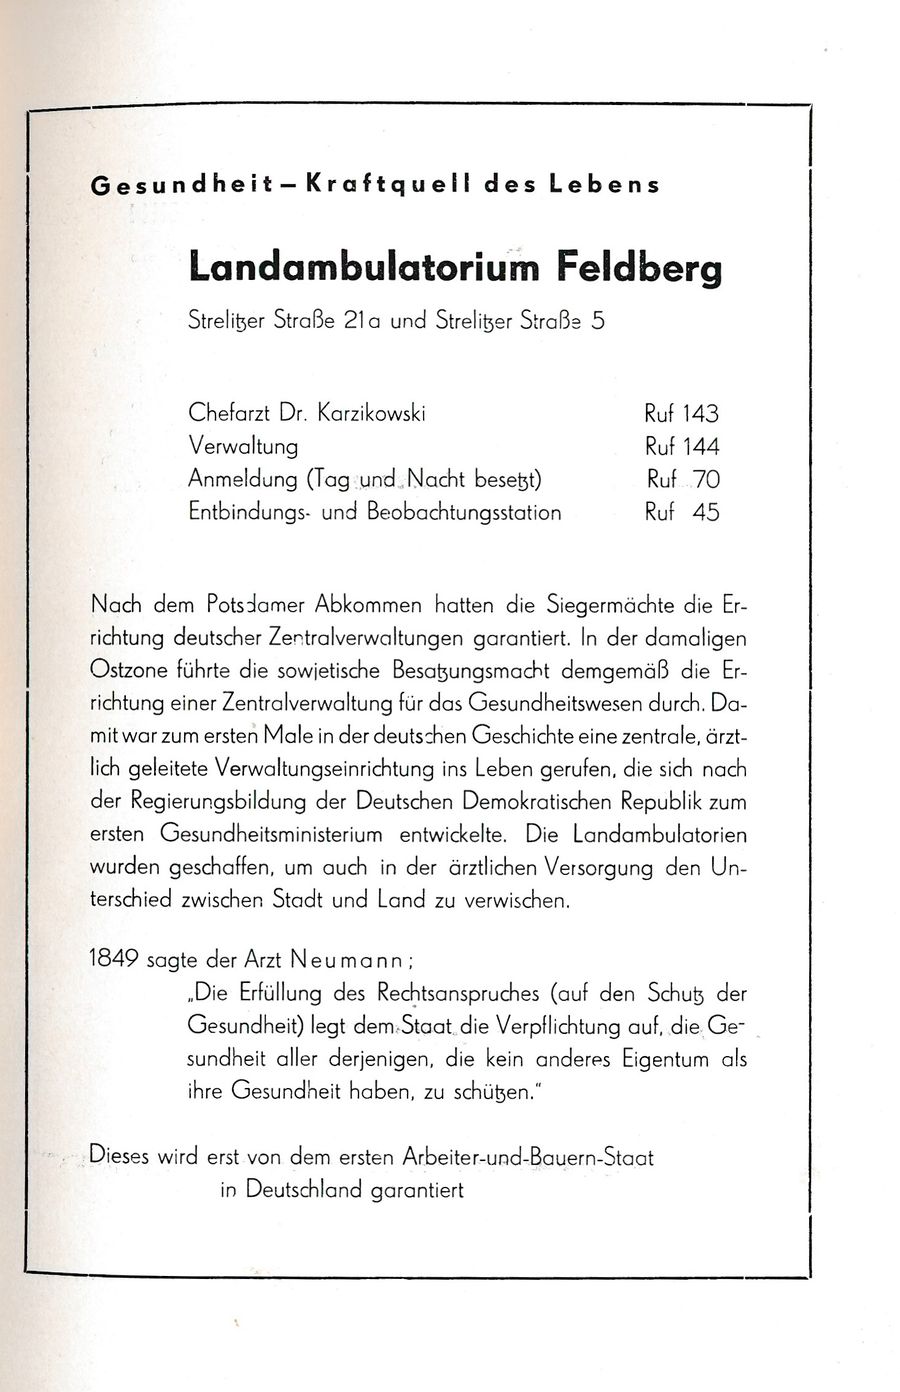 Feldberg 700 1956 044